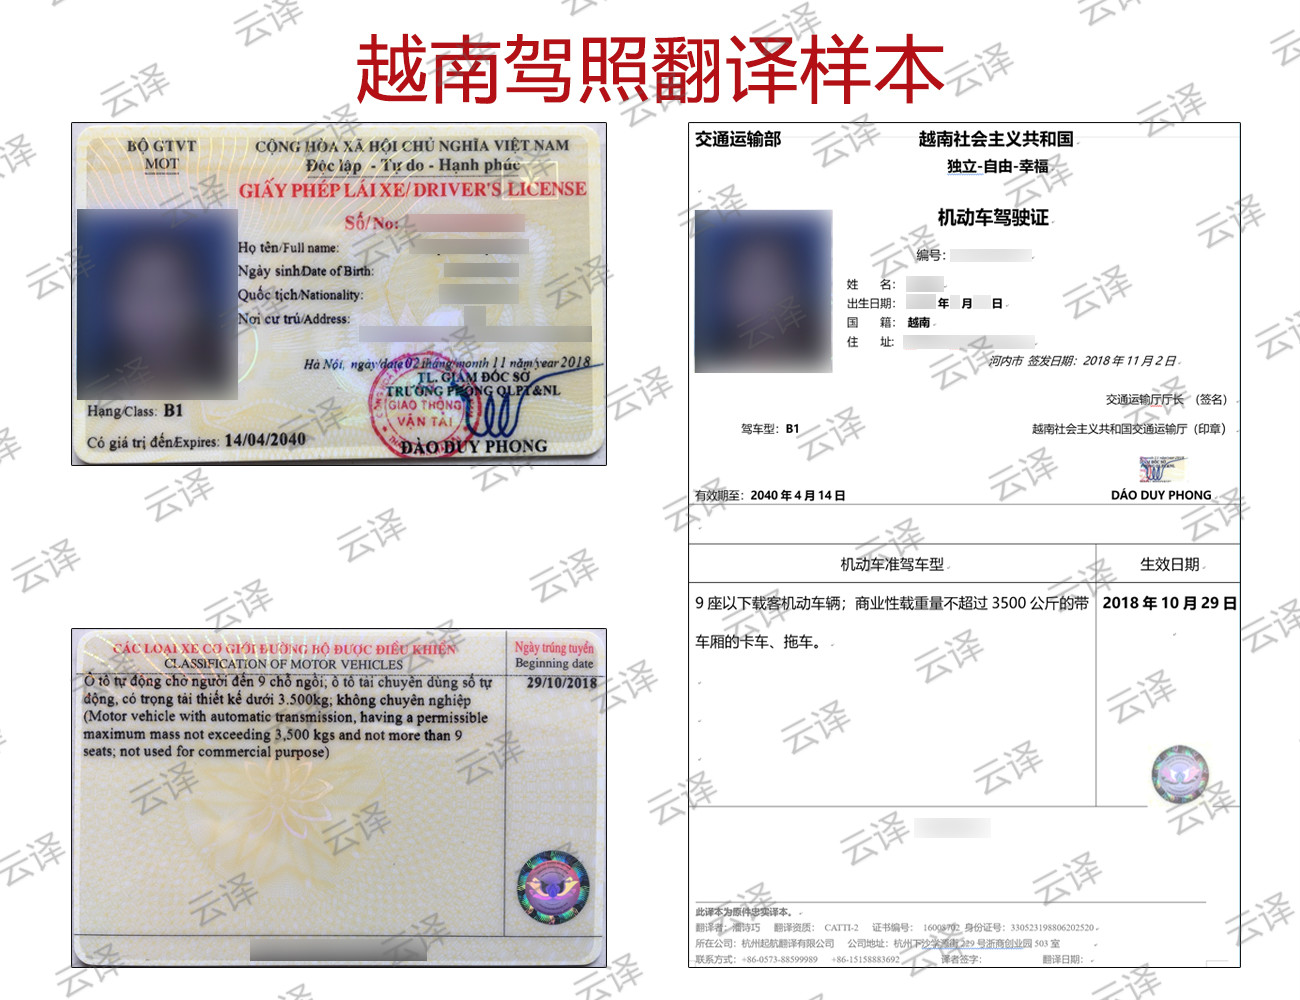 第二次申请越南签证需要换护照吗？ | Vietnamimmigration.com official website | e-visa ...